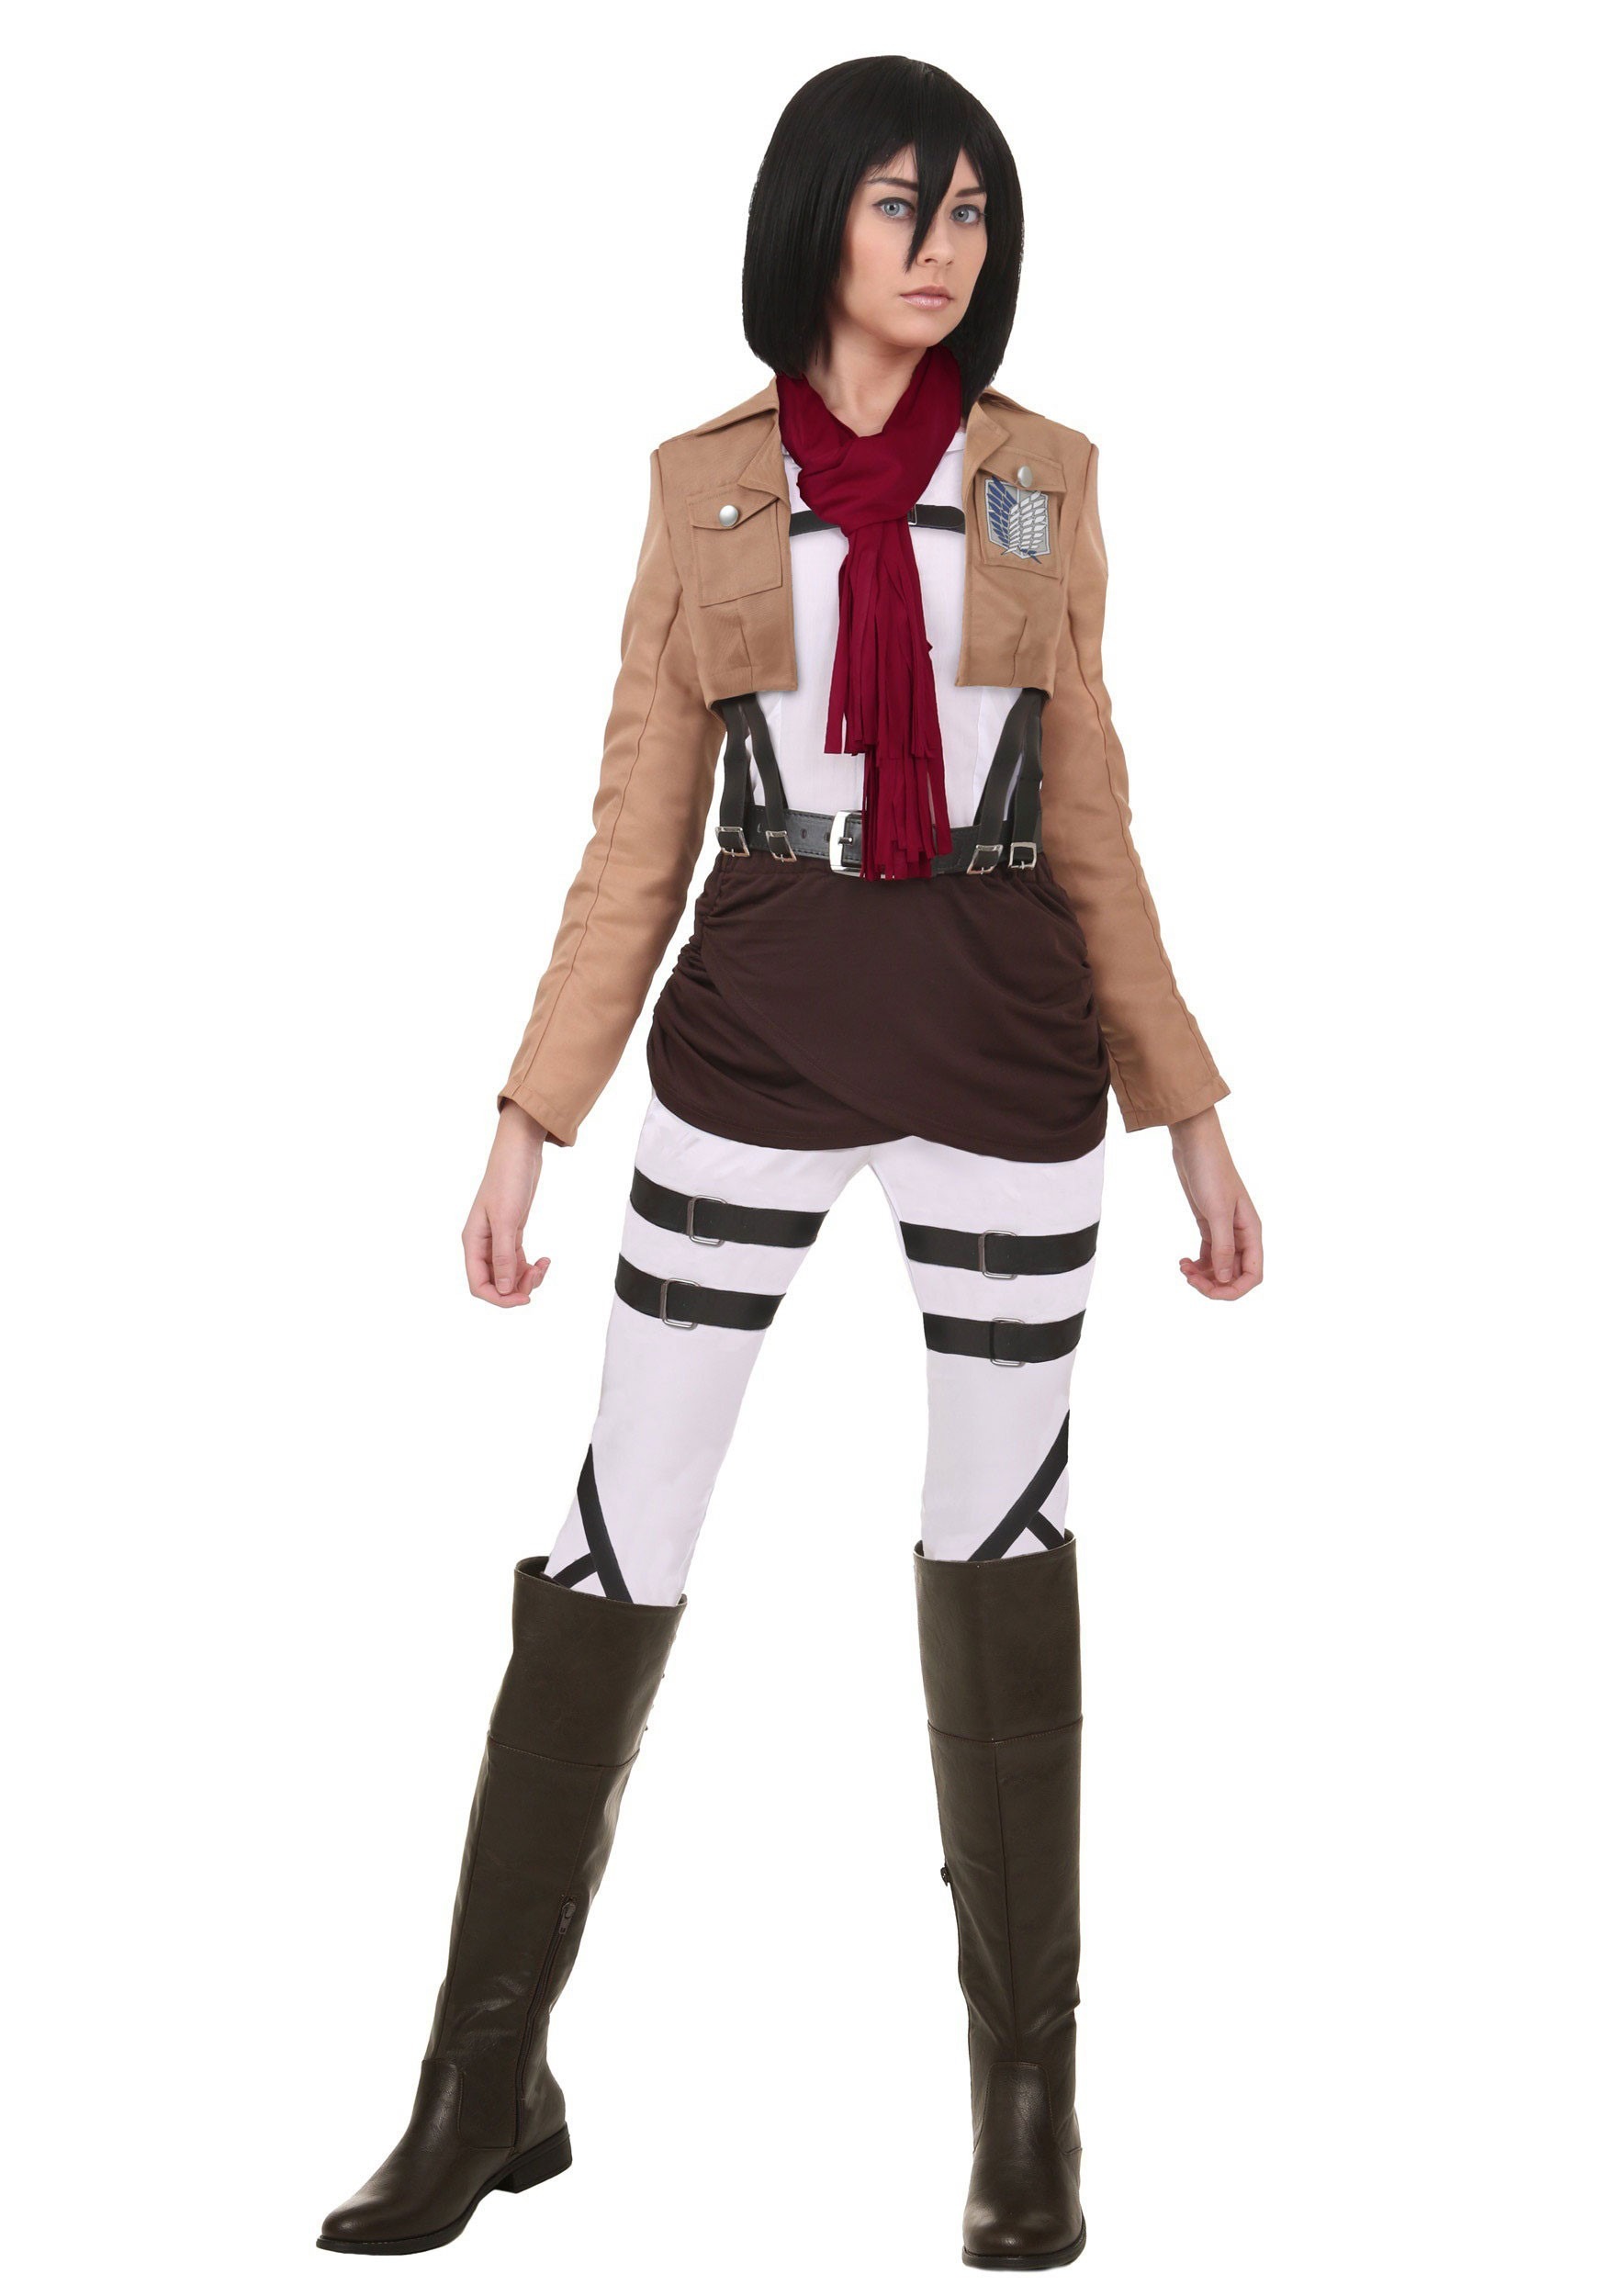 Image of Attack on Titan Mikasa Costume | Adult Anime Cosplay ID FUN2270AD-XS